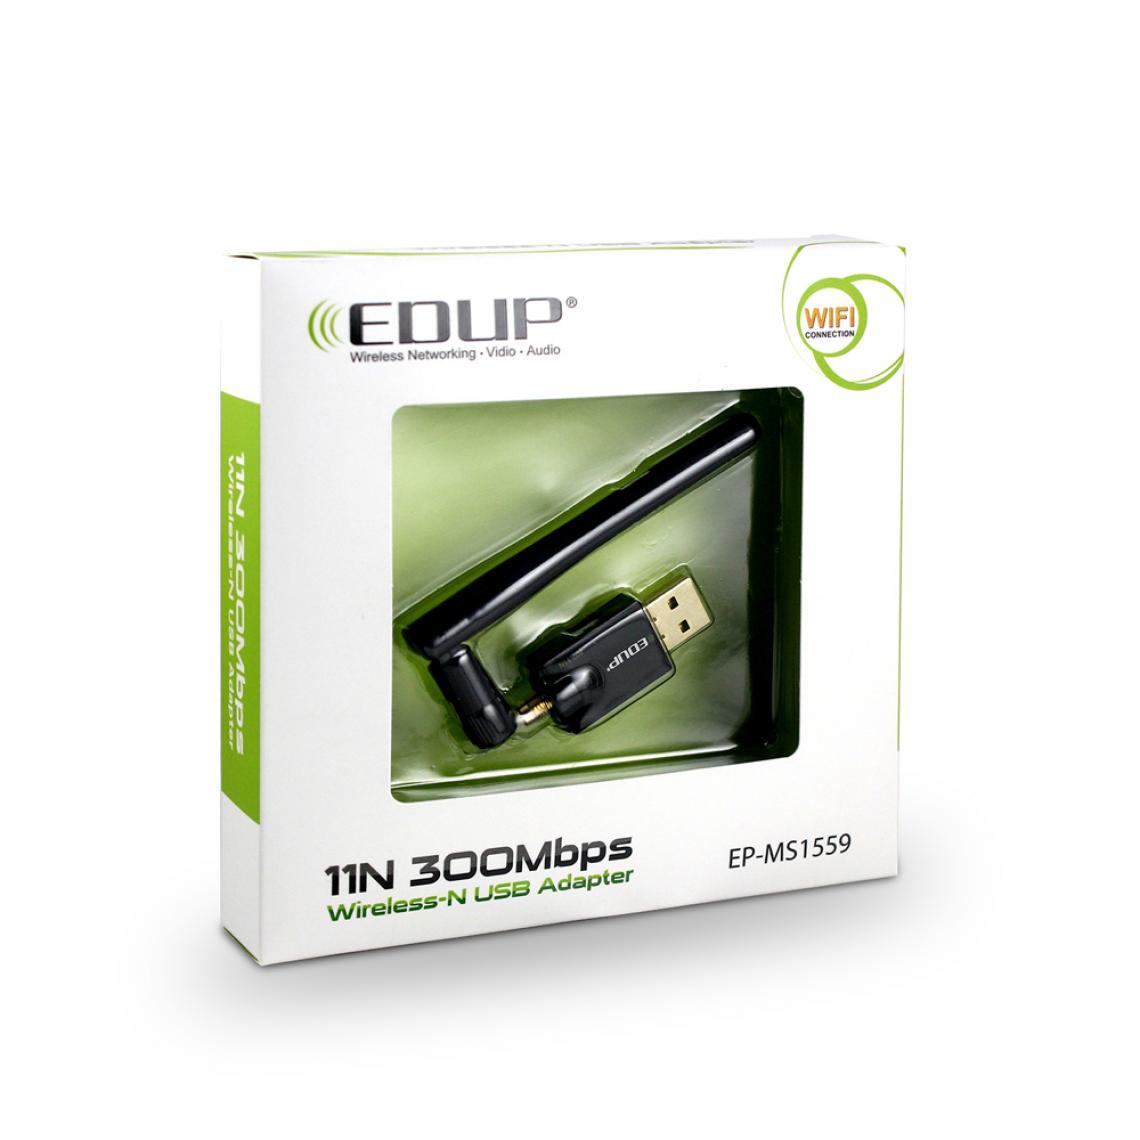 marque generique - EDUP N1559 300MBPS Adaptateur USB Mini sans fil 802.11n - Antenne WiFi